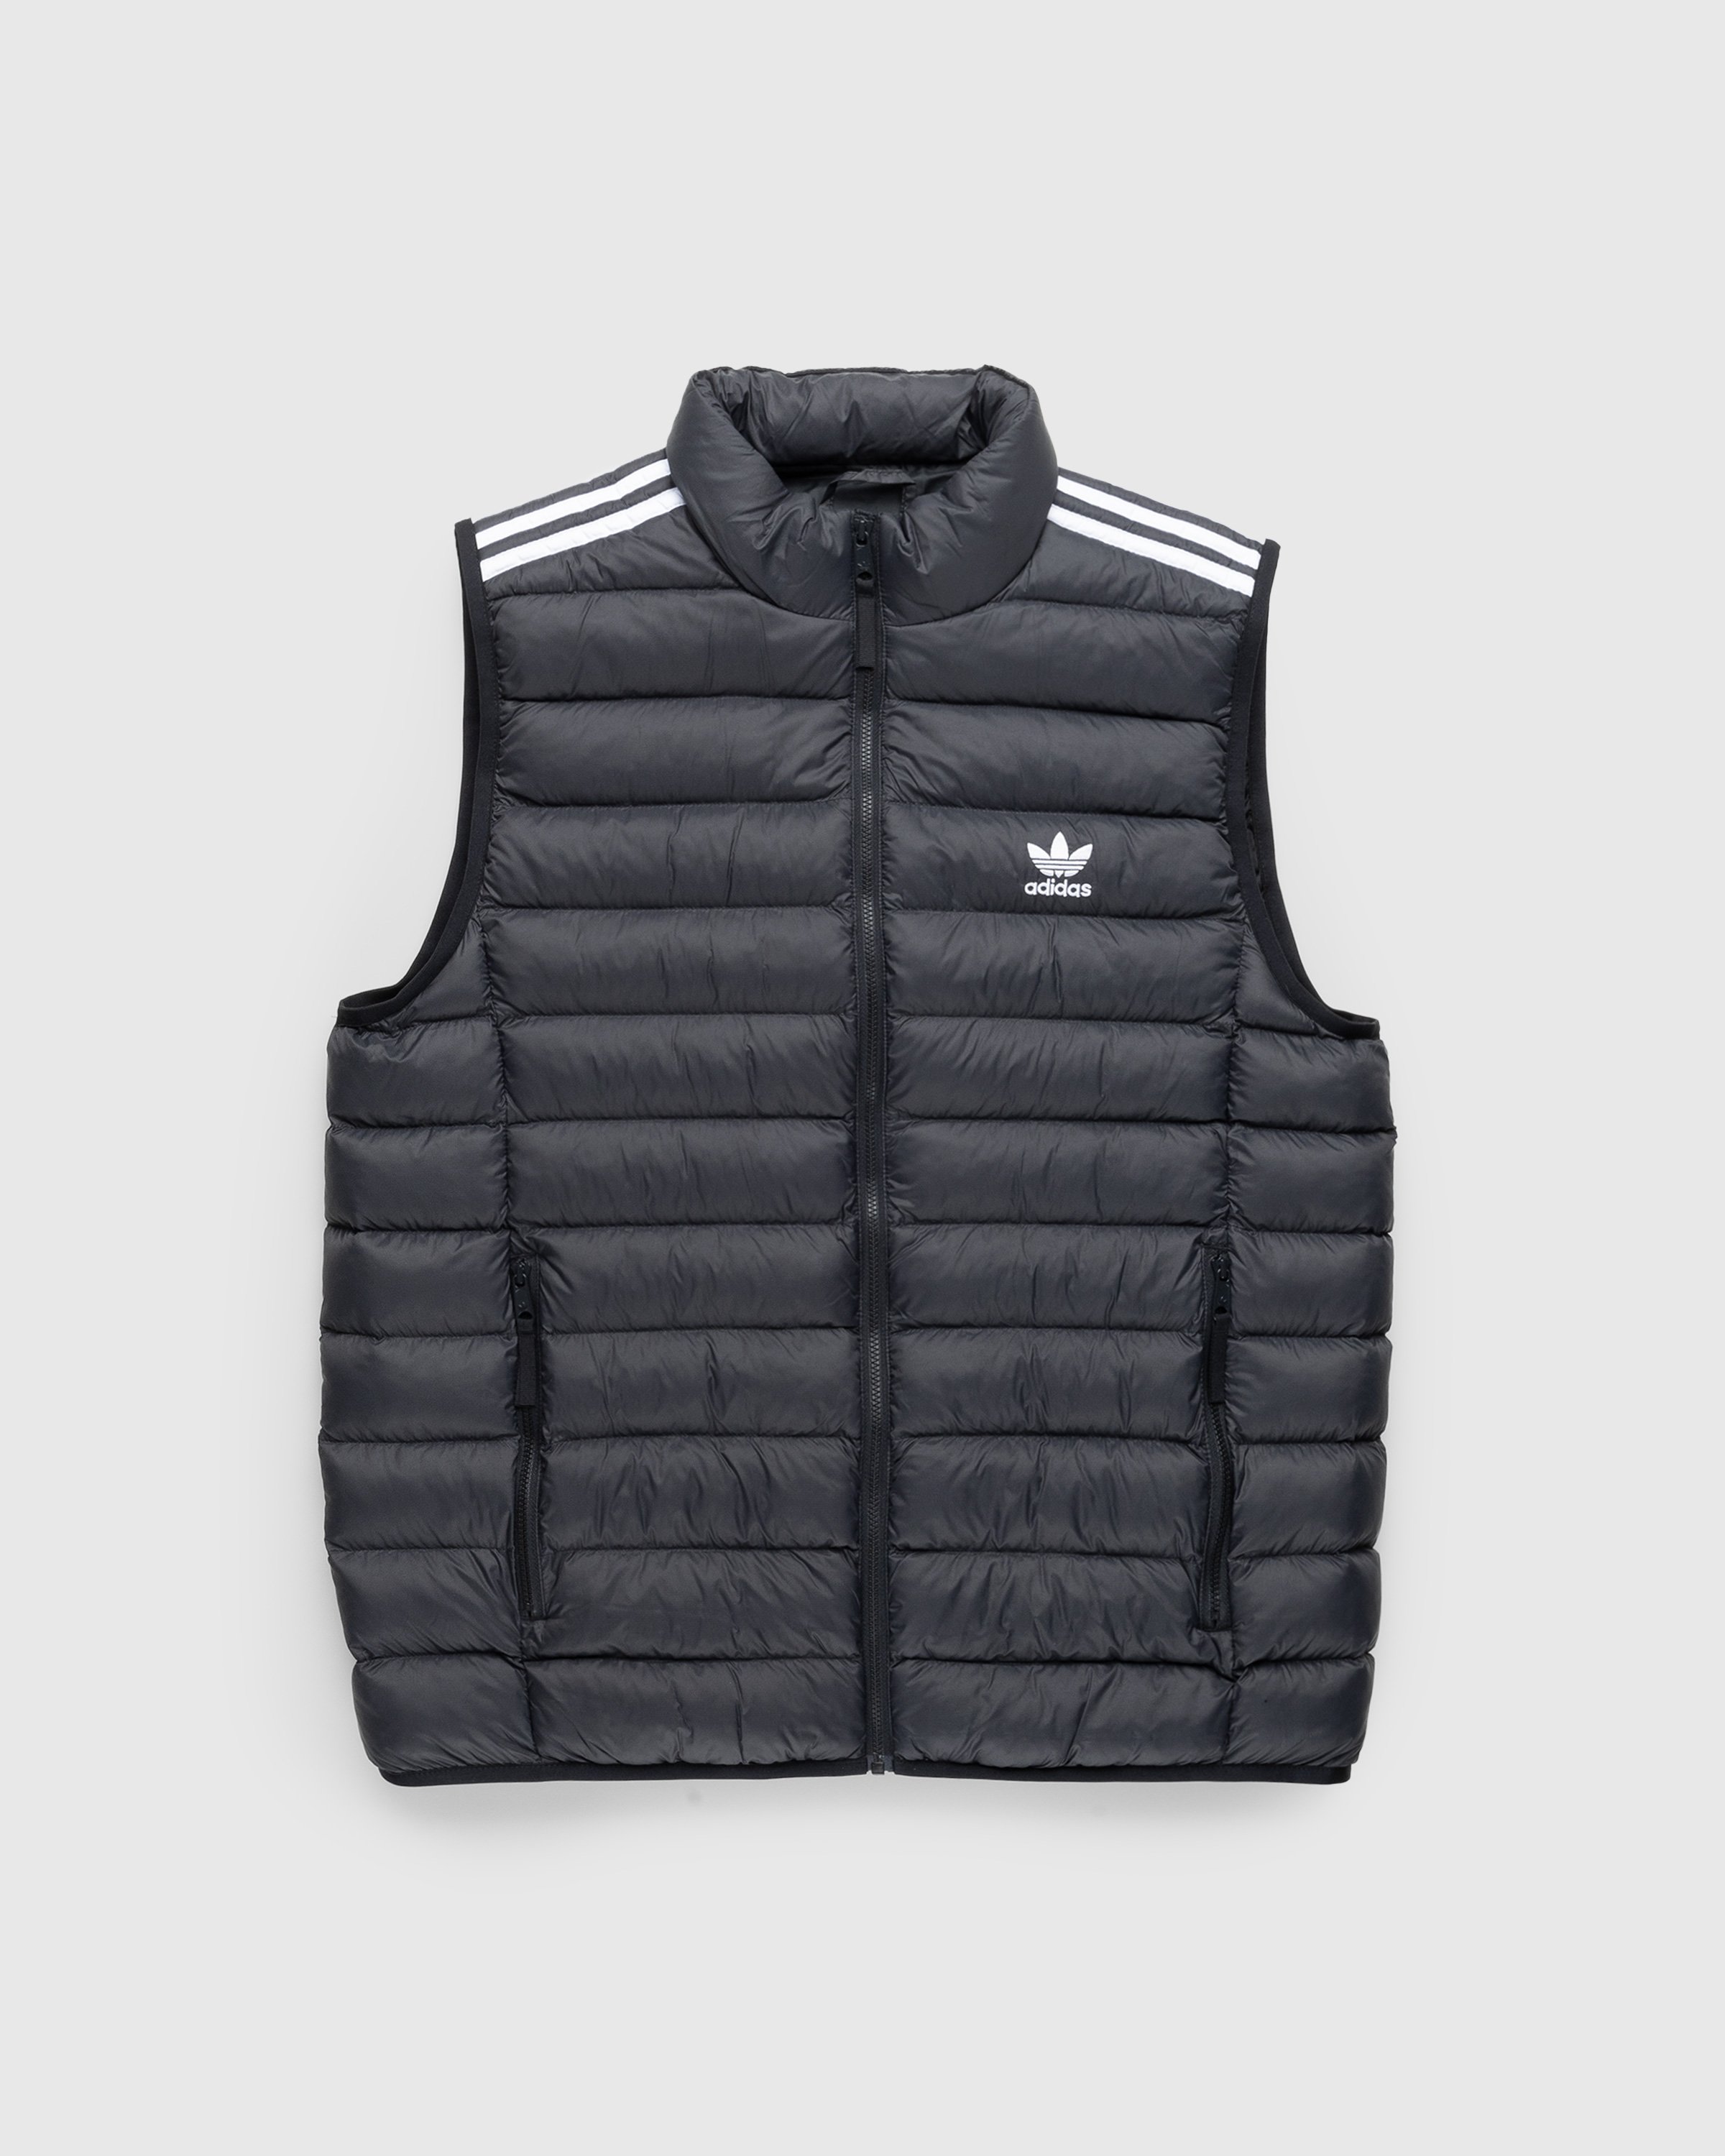 Adidas – Padded Shop Highsnobiety Vest Black/White 